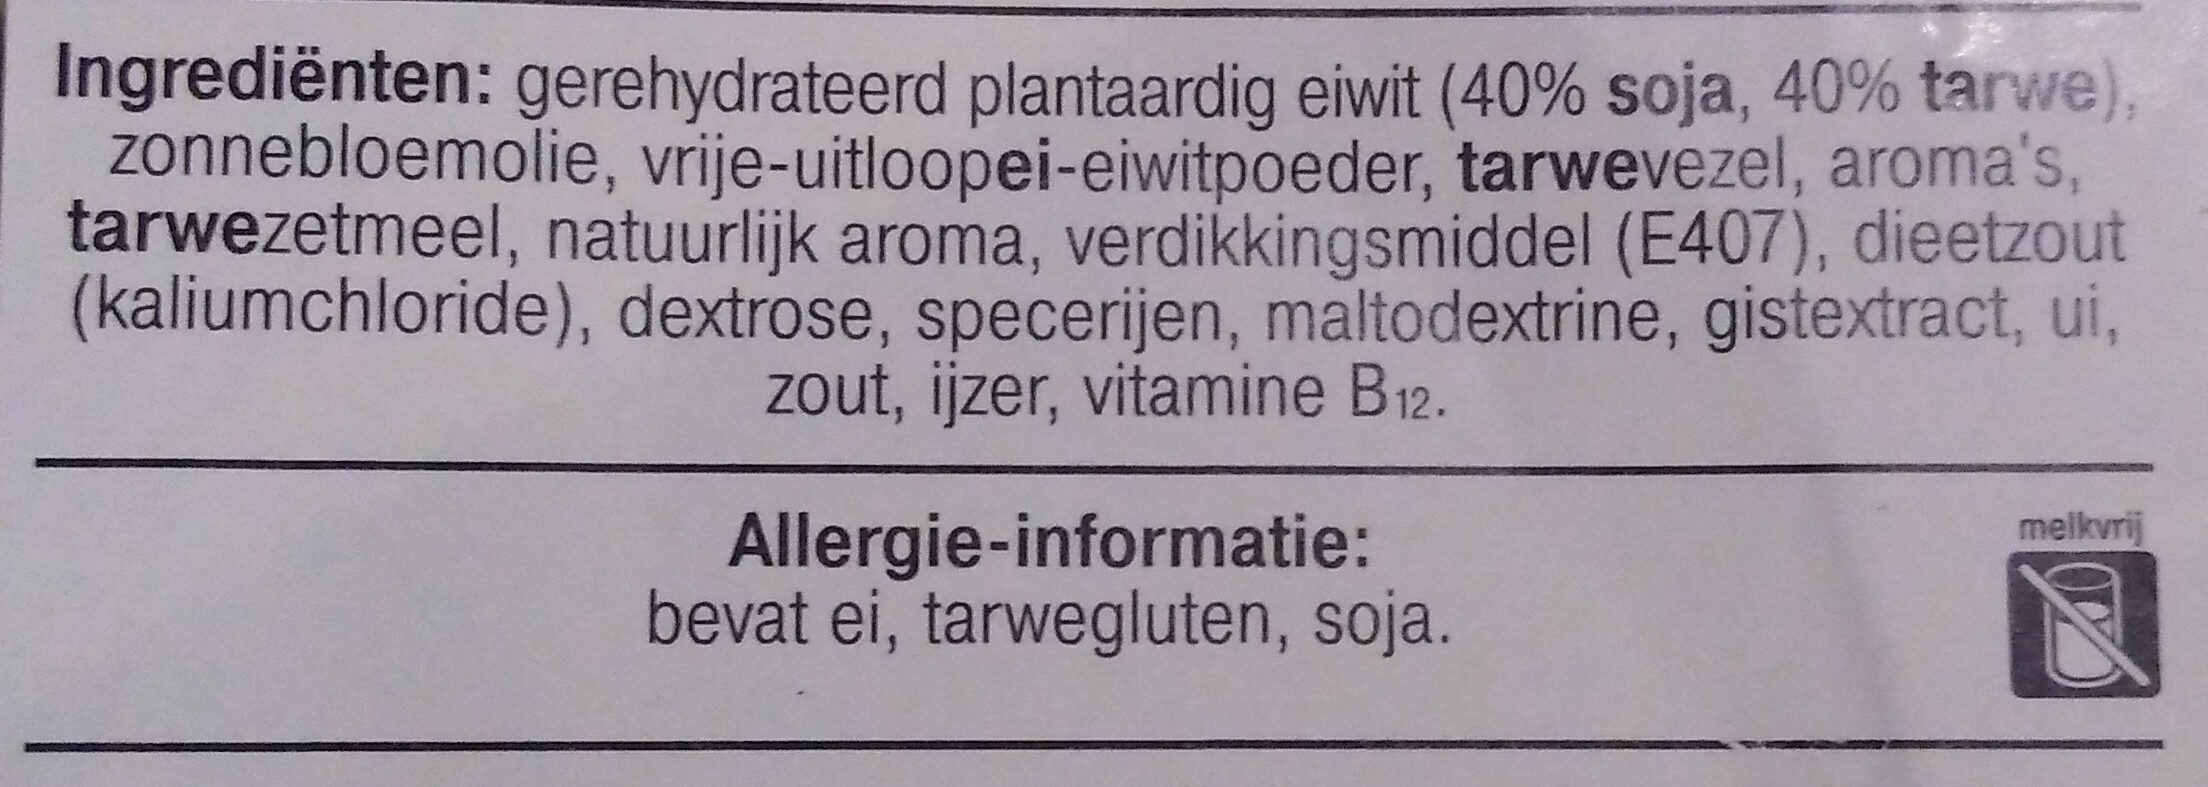 Vegetarische basis wokstukjes - Ingredients - nl